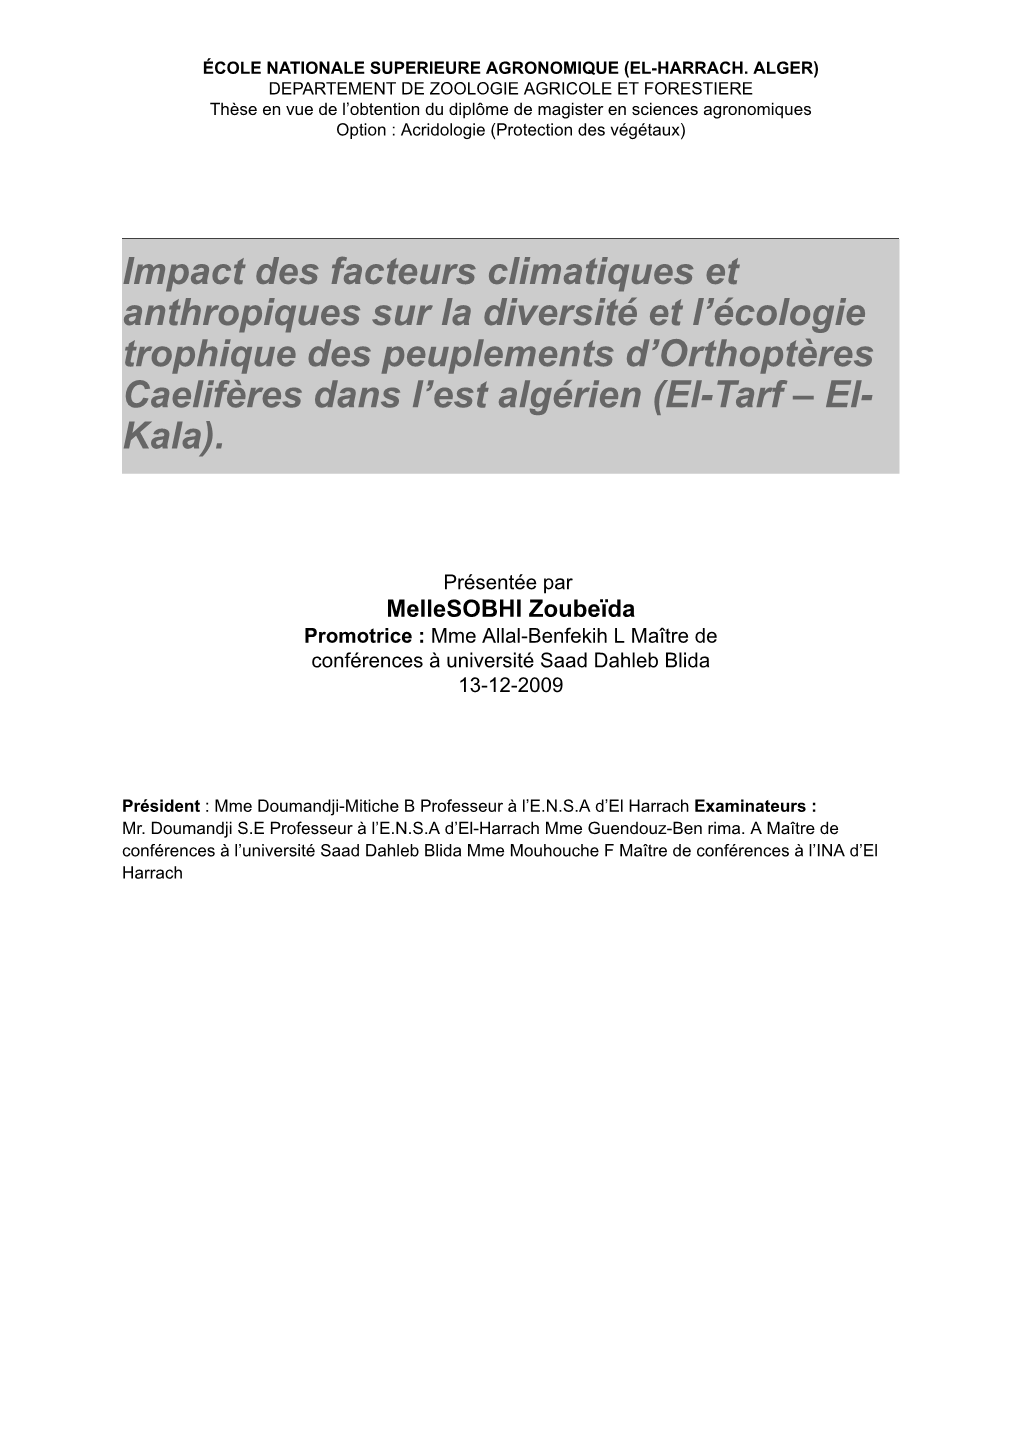 Impact Des Facteurs Climatiques Et Anthropiques Sur La Diversité Et L